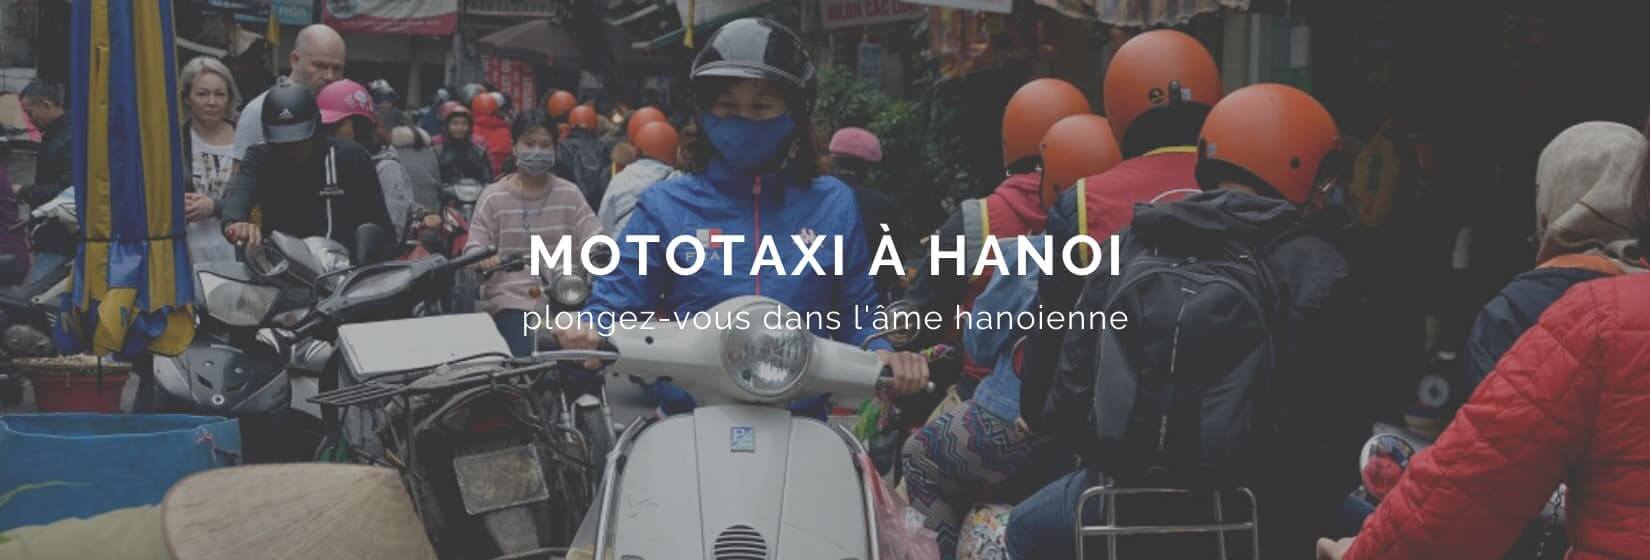 balade-mototaxi-hanoi